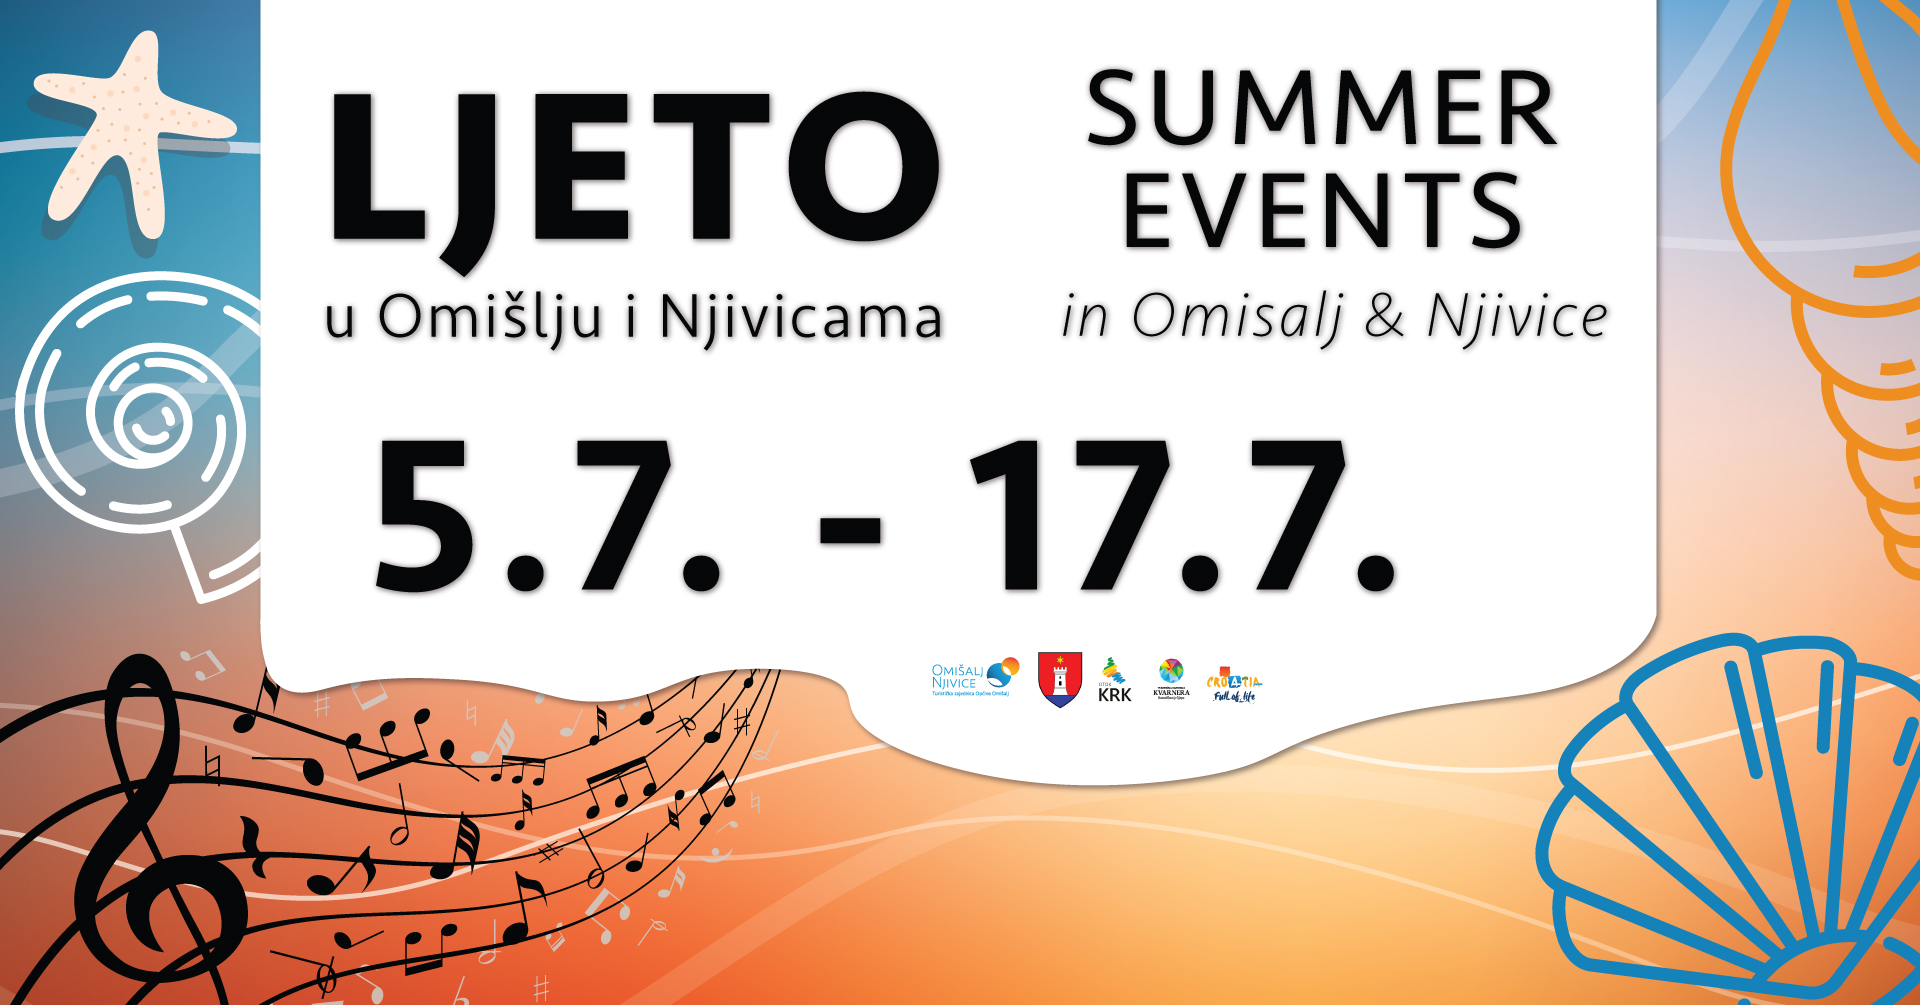 Ljeto u Omišlju i Njivicama bit će u znaku odličnih koncerata, fešti i festivala, ali i kulture!